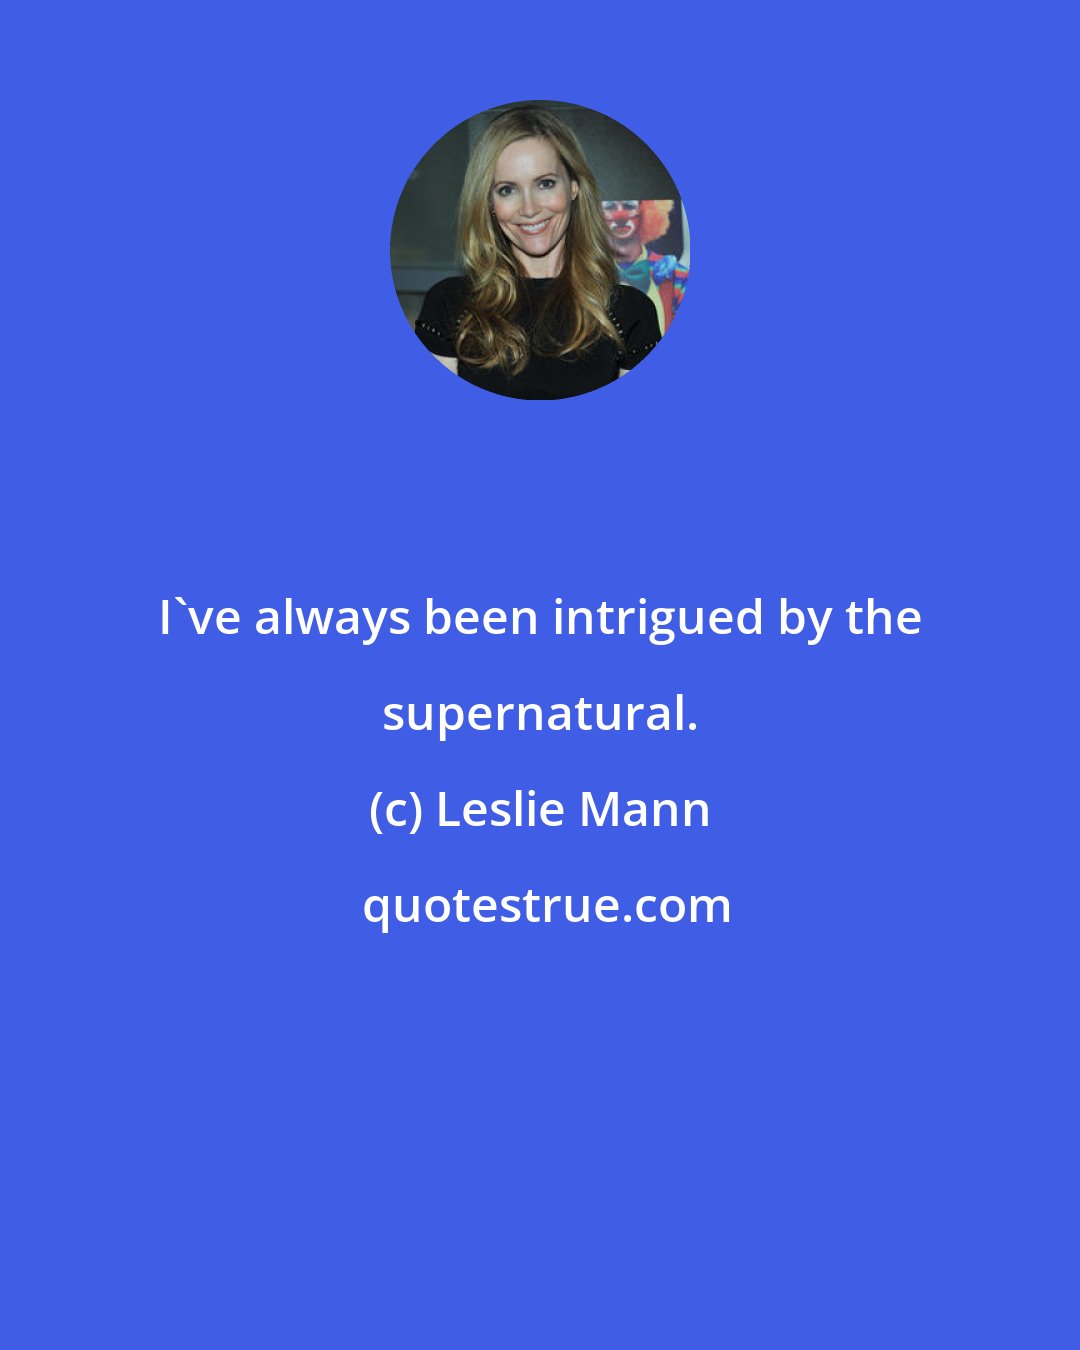 Leslie Mann: I've always been intrigued by the supernatural.